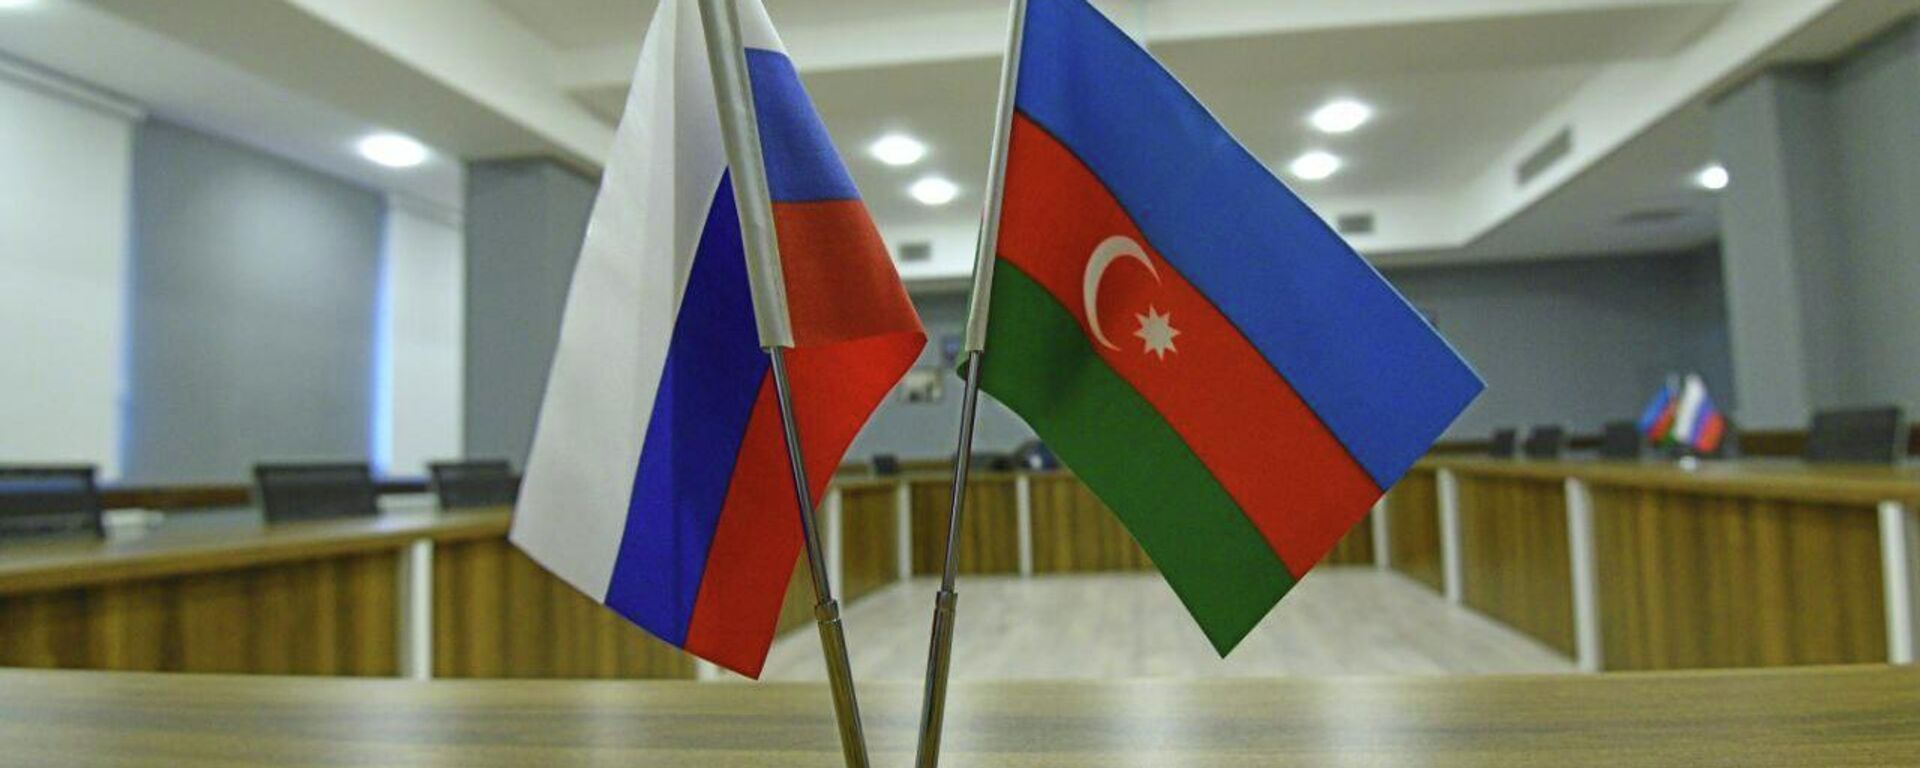 Флаги Азербайджана и России, фото из архива - Sputnik Азербайджан, 1920, 16.02.2022